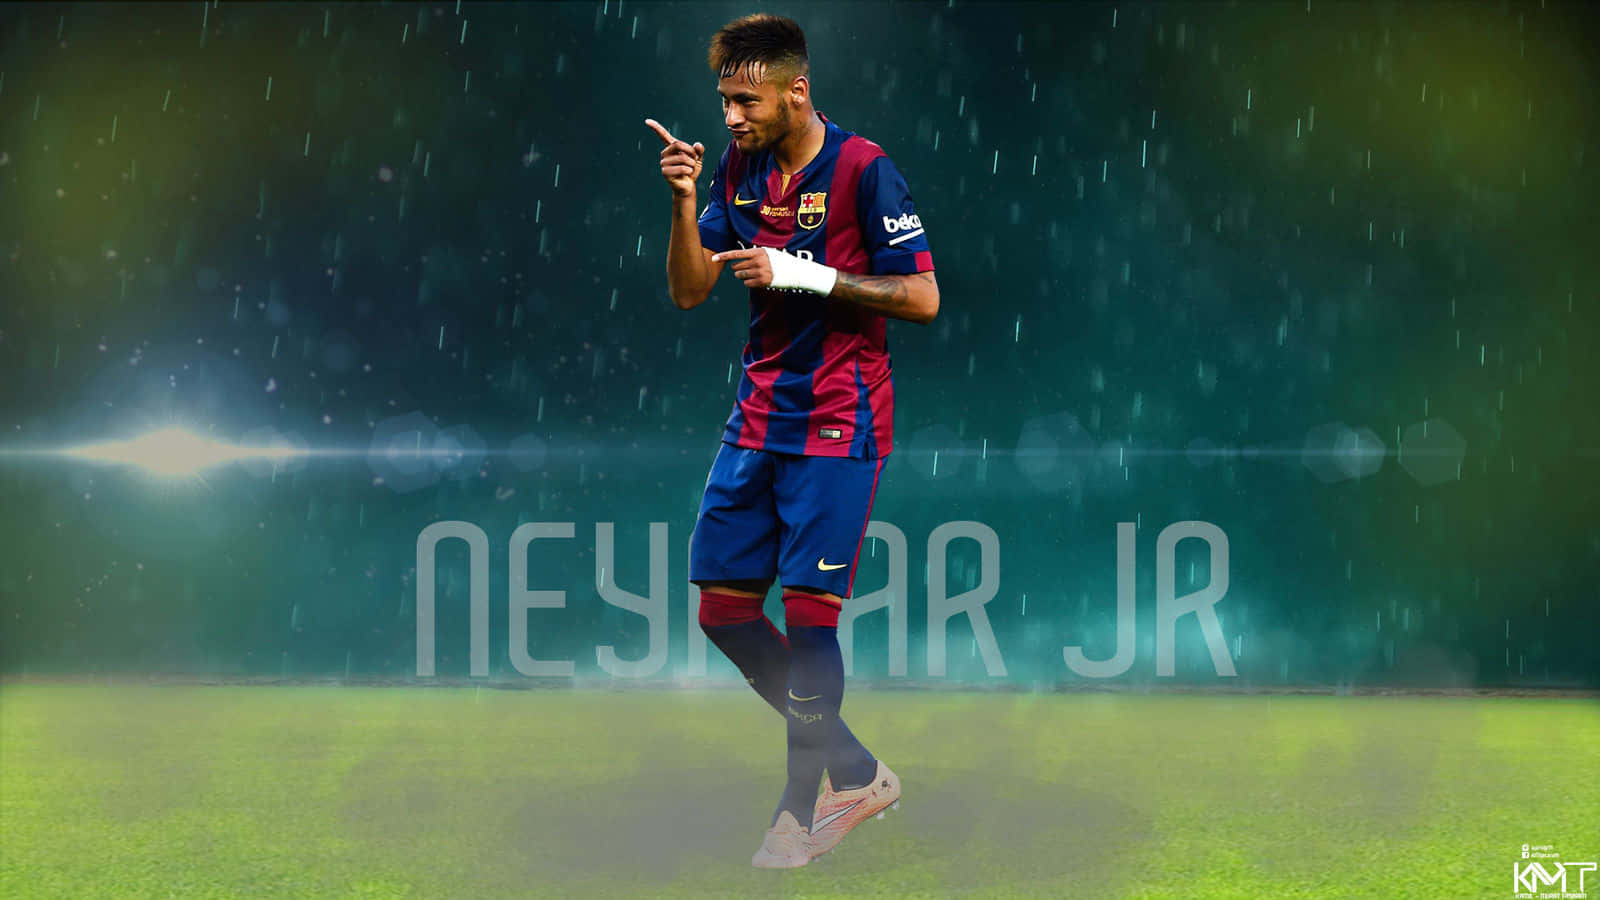 Neymar in Action